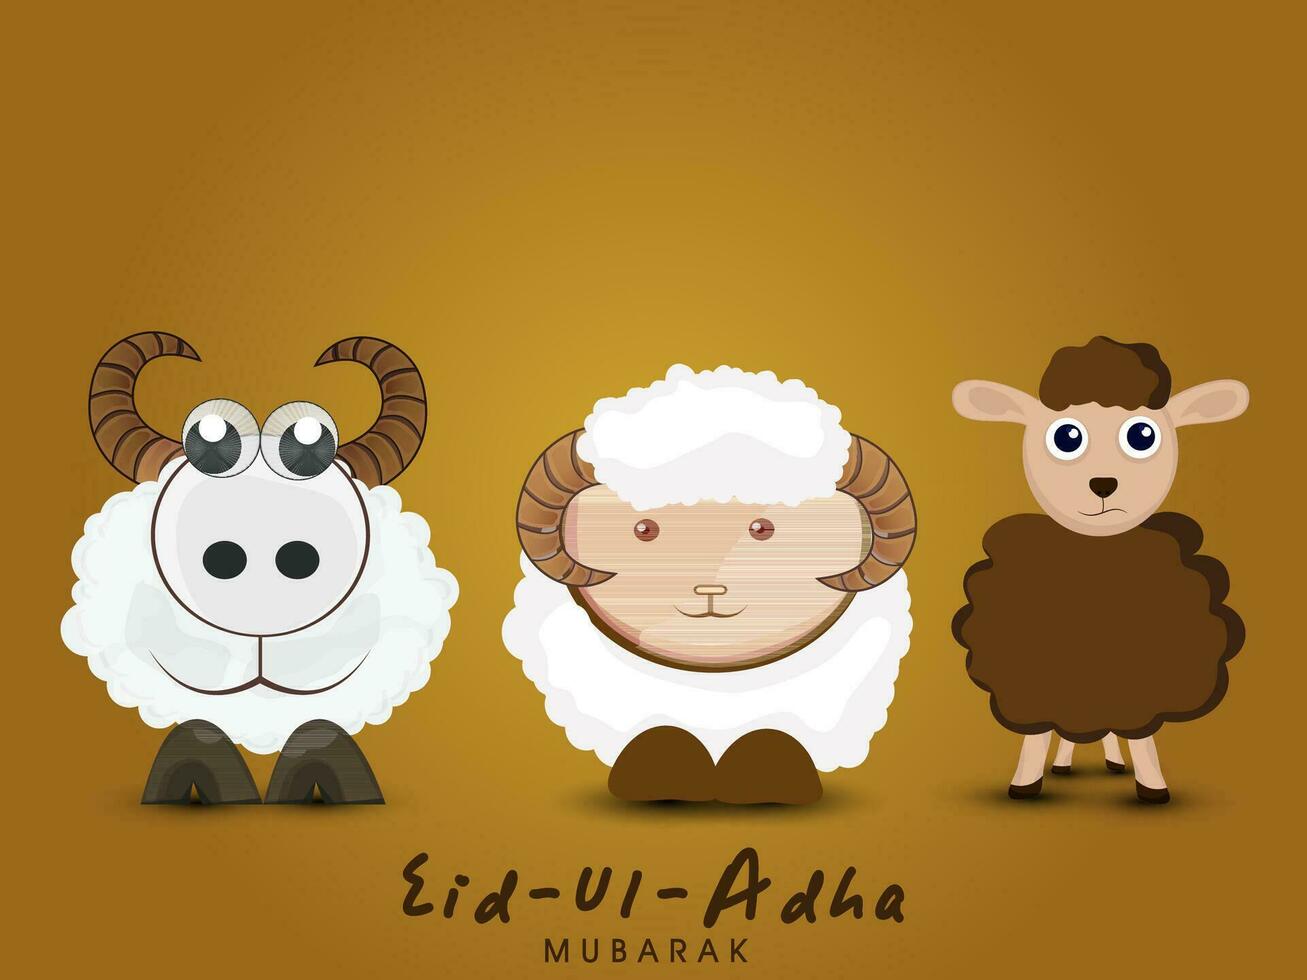 eid-ul-adha Mubarak Gruß Karte mit Karikatur Illustration von drei Schaf Stehen auf braun Hintergrund. vektor